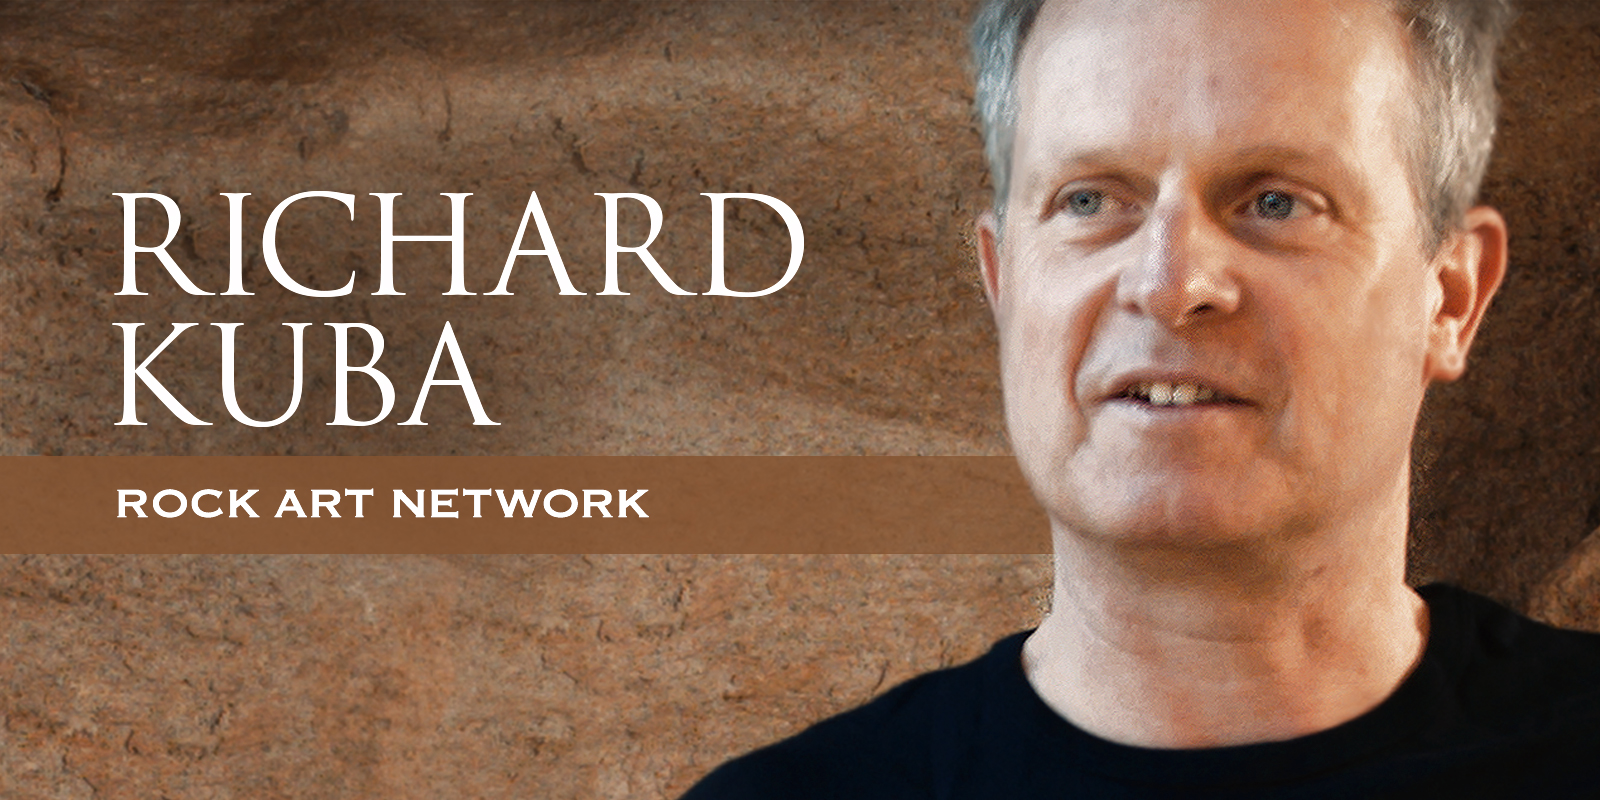 The Rock Art Network Richard Kuba